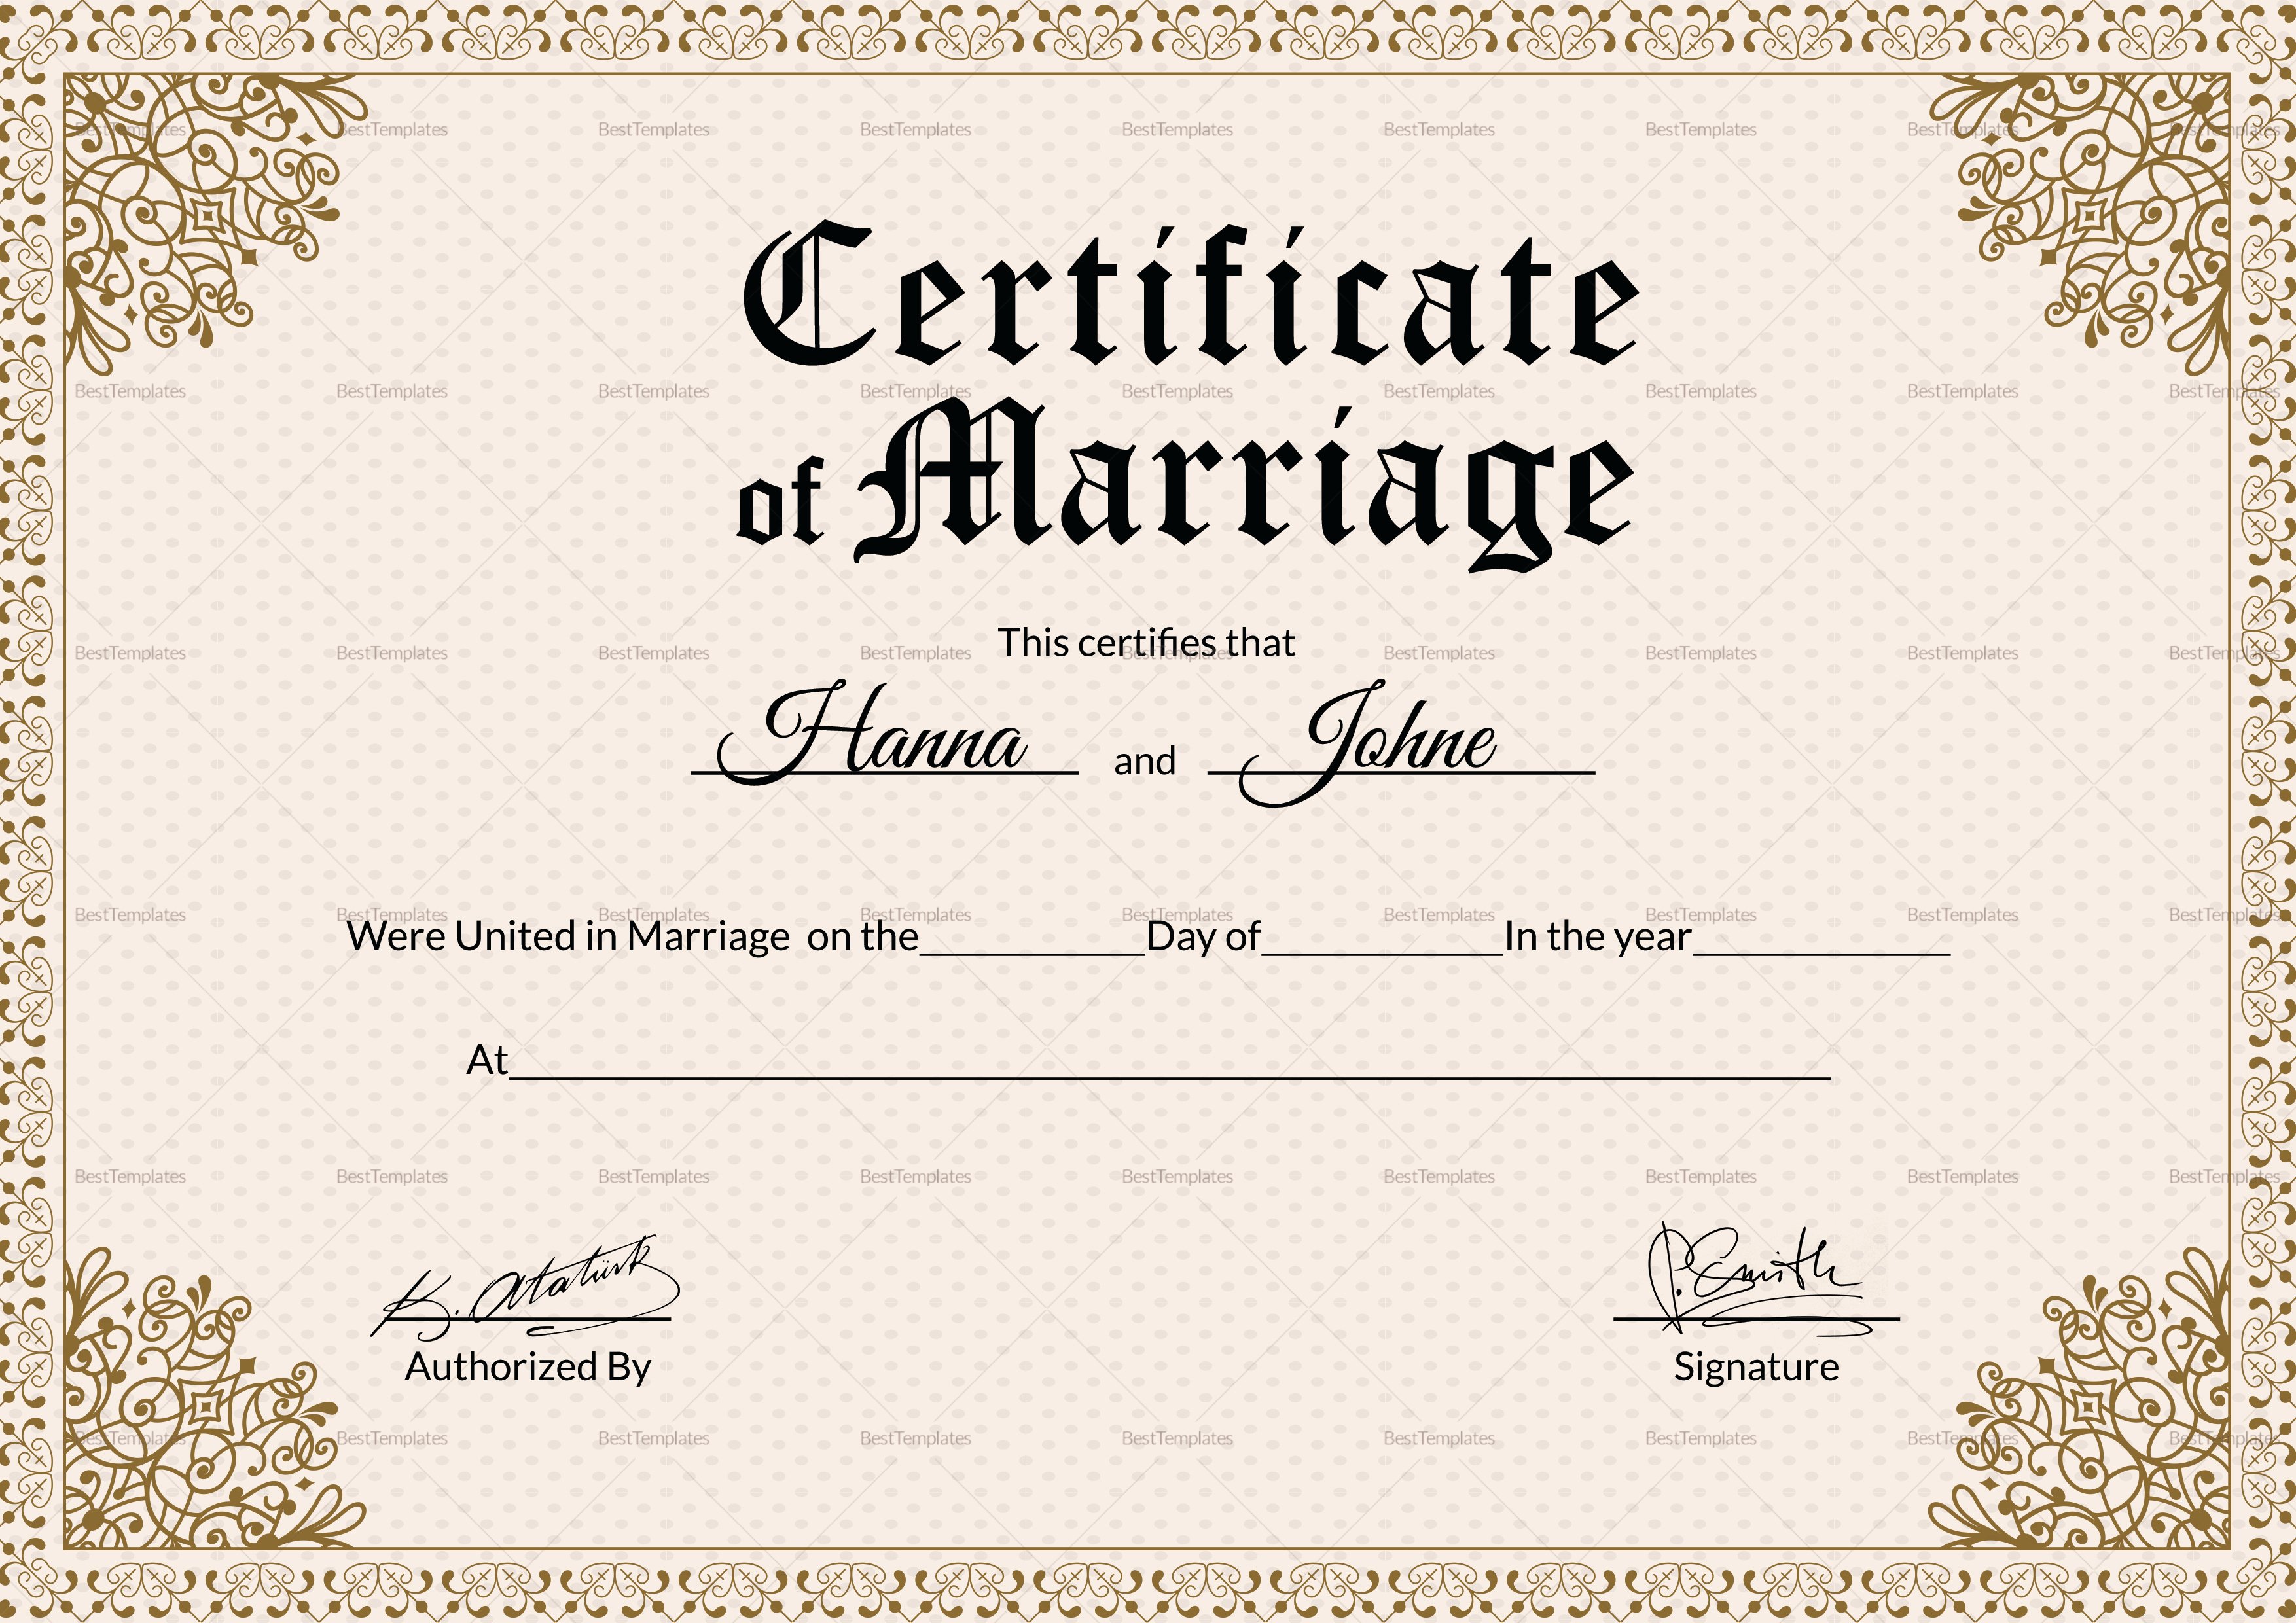 Keepsake Marriage Certificate Template Luxury Keepsake Marriage Certificate Design Template In Psd Word